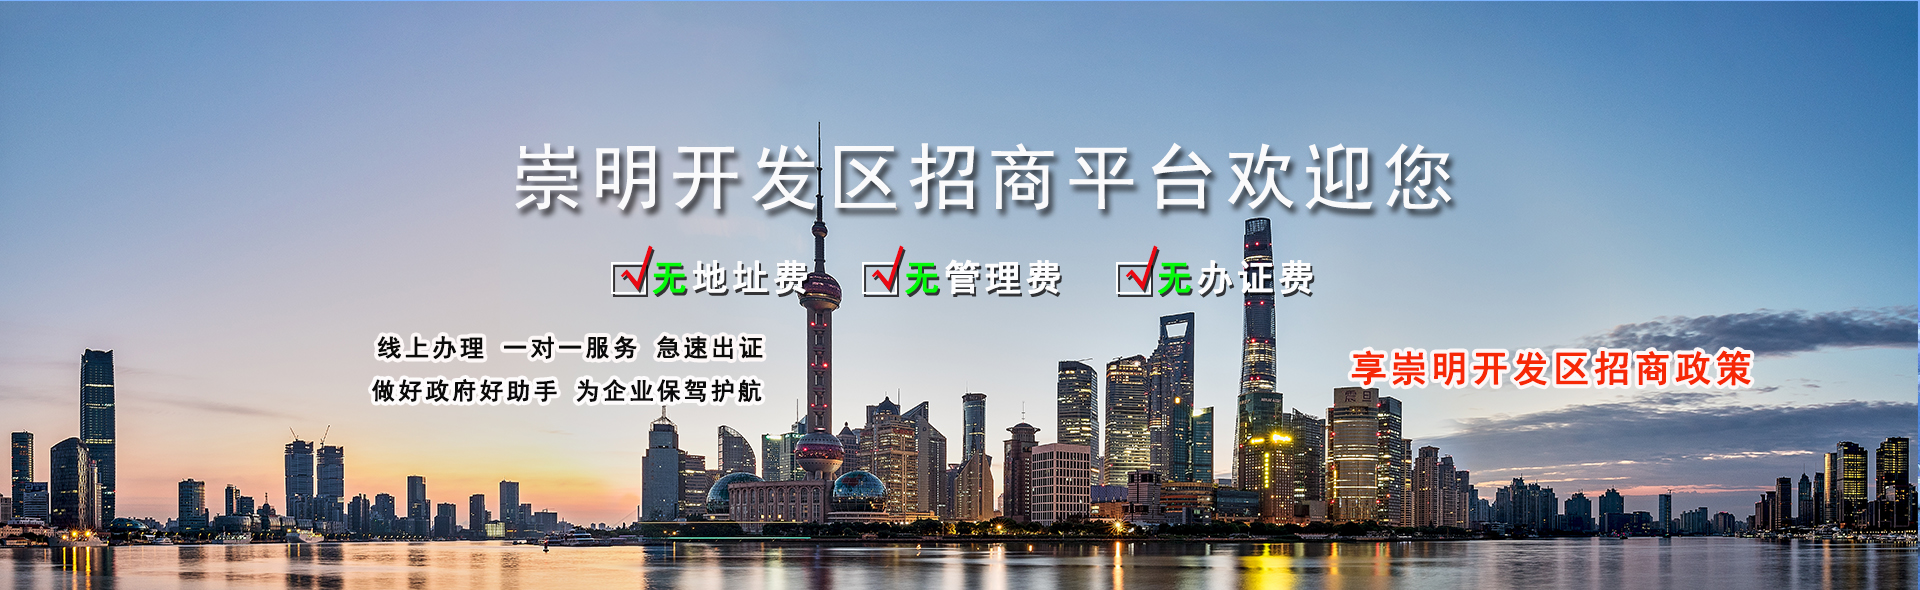 上海市崇明区经济开发区市区招商办公室